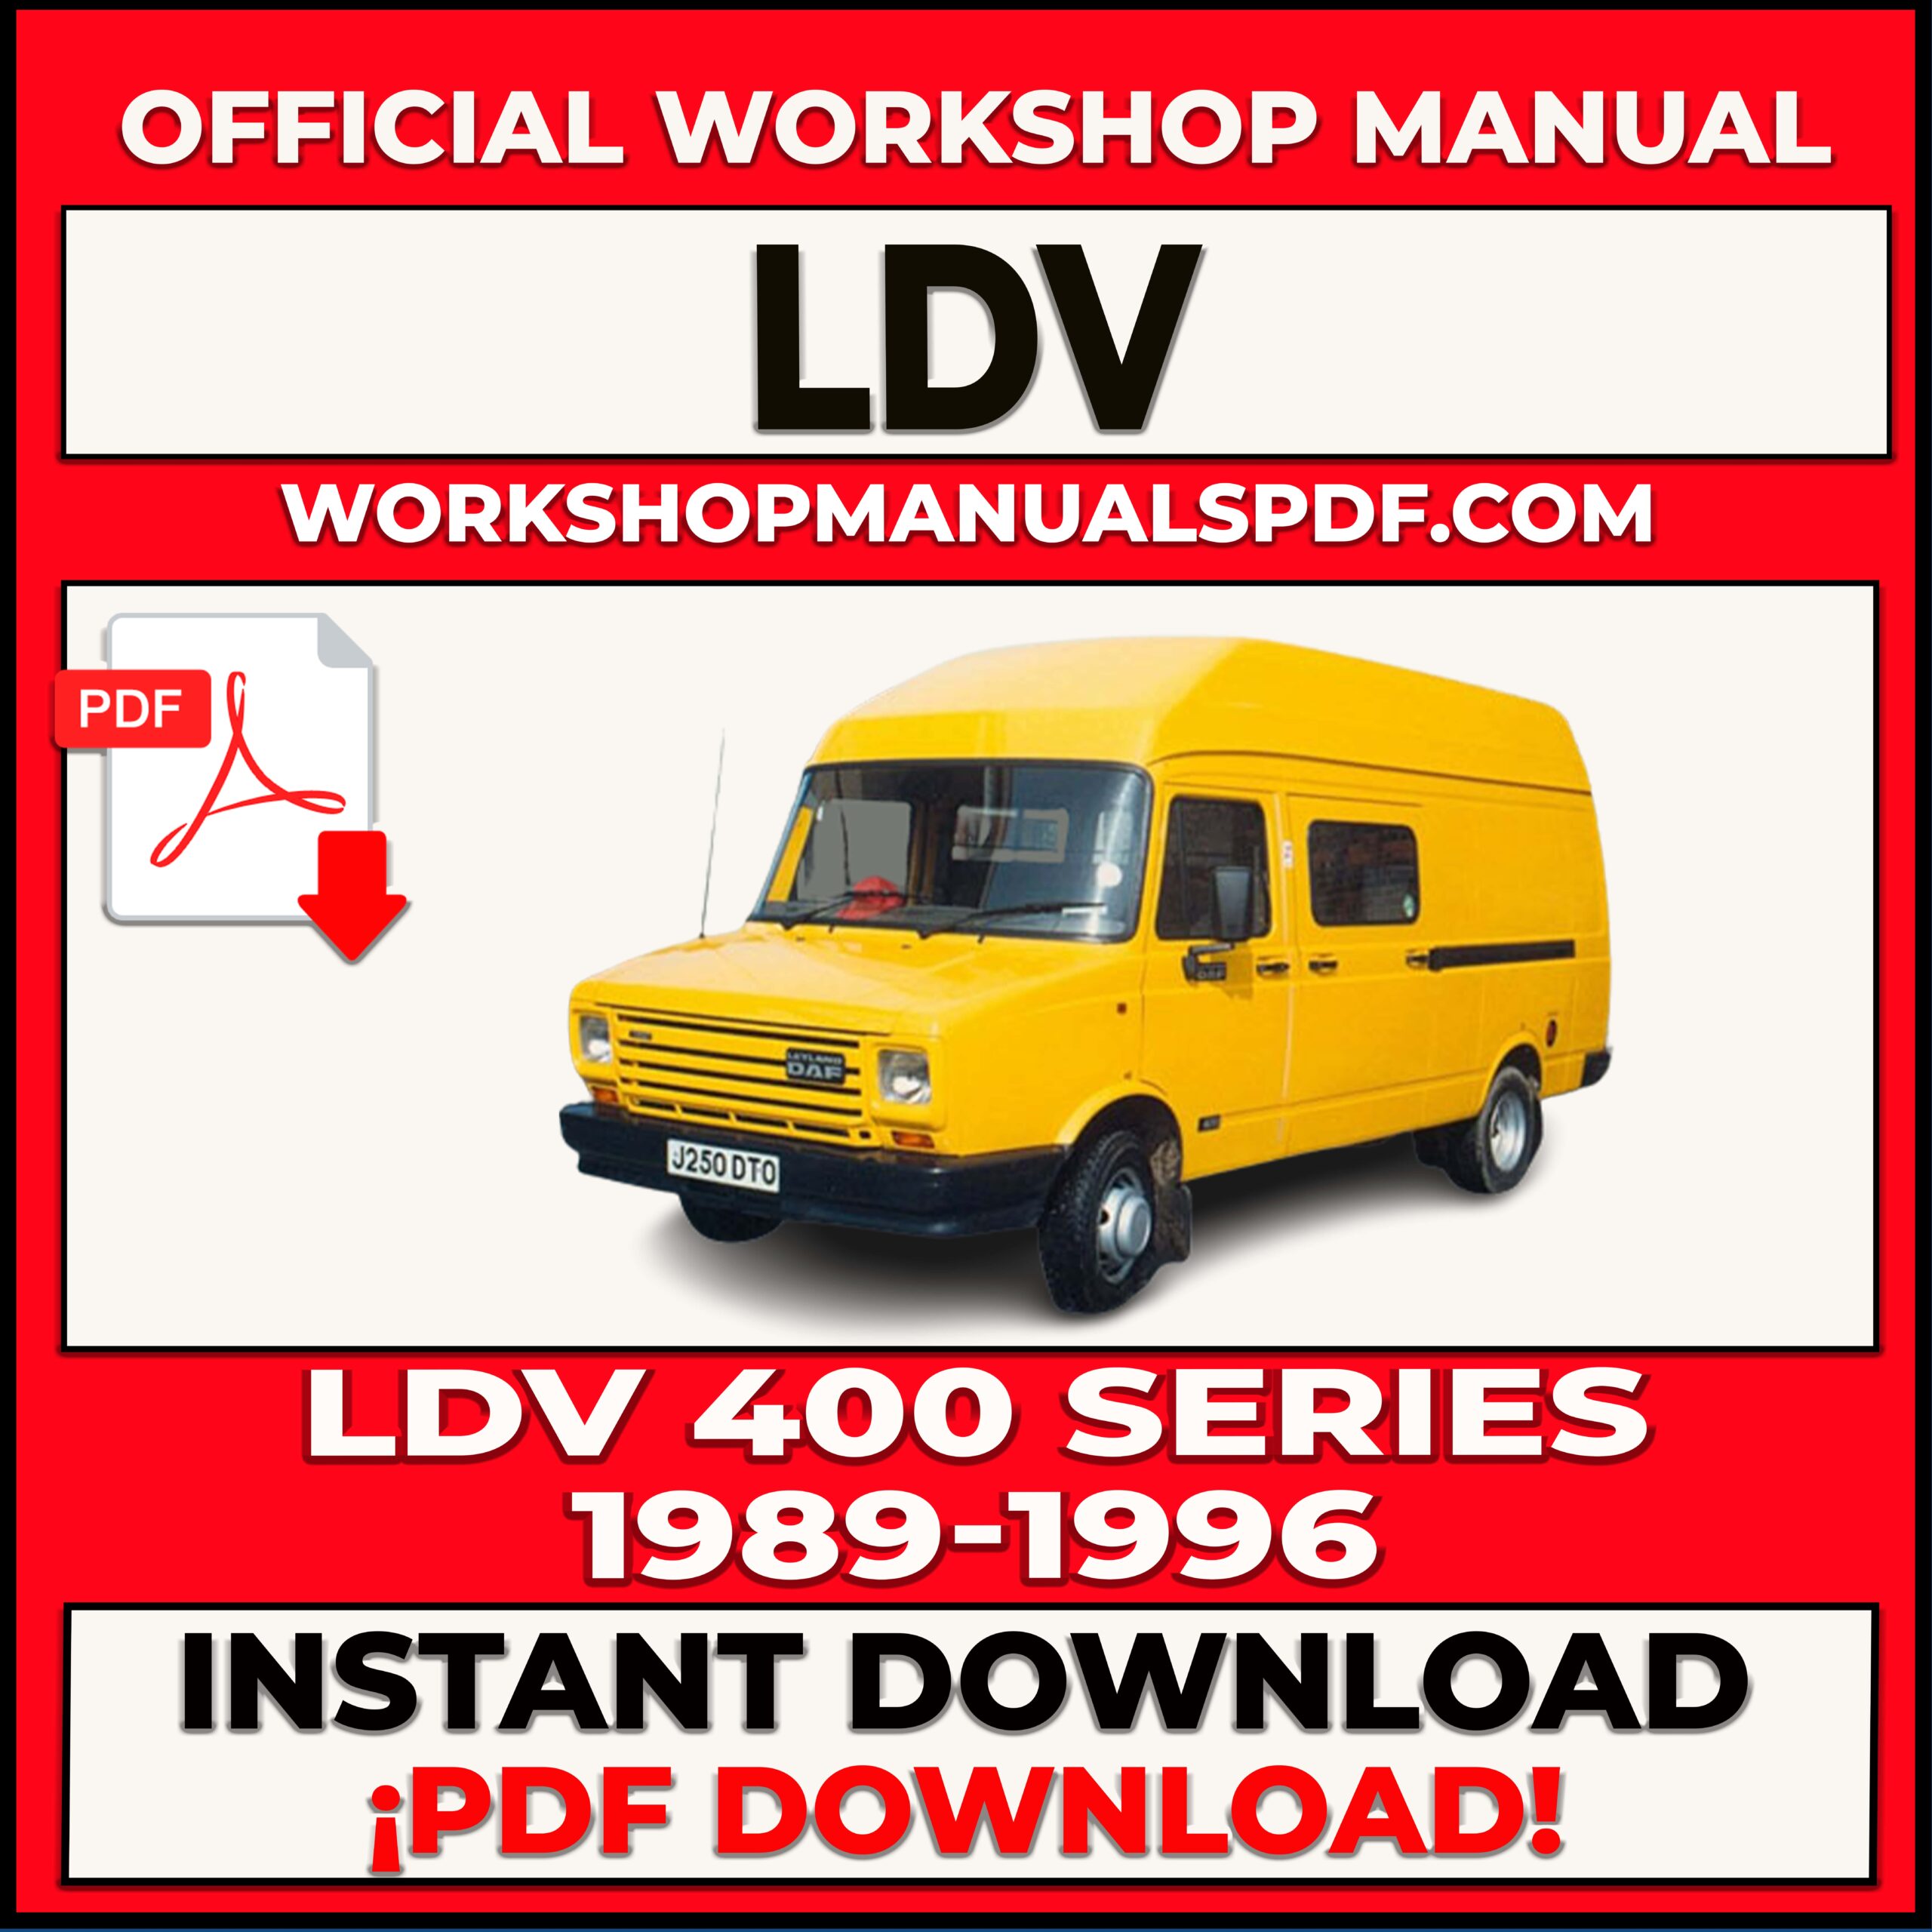 LDV 400 Series (1989-1996) Workshop Repair Manual